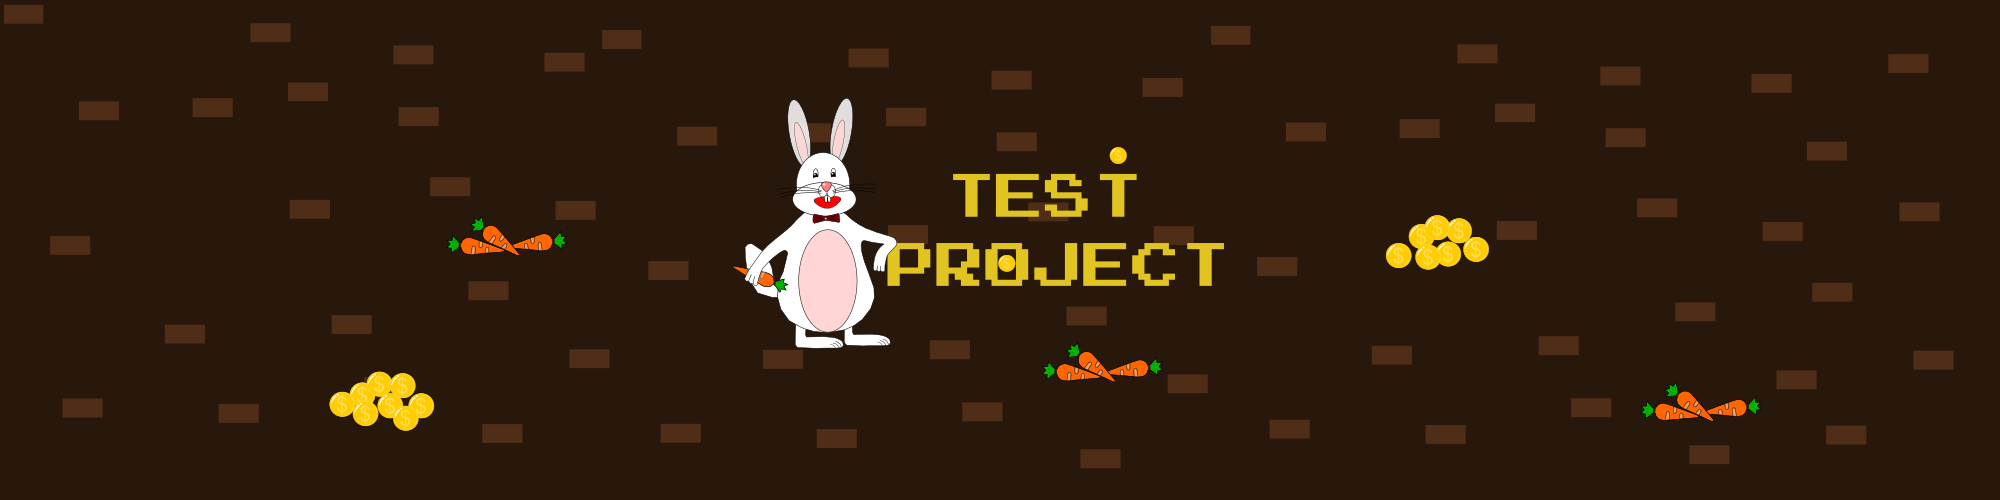 Test Project/ Bunny Maniac